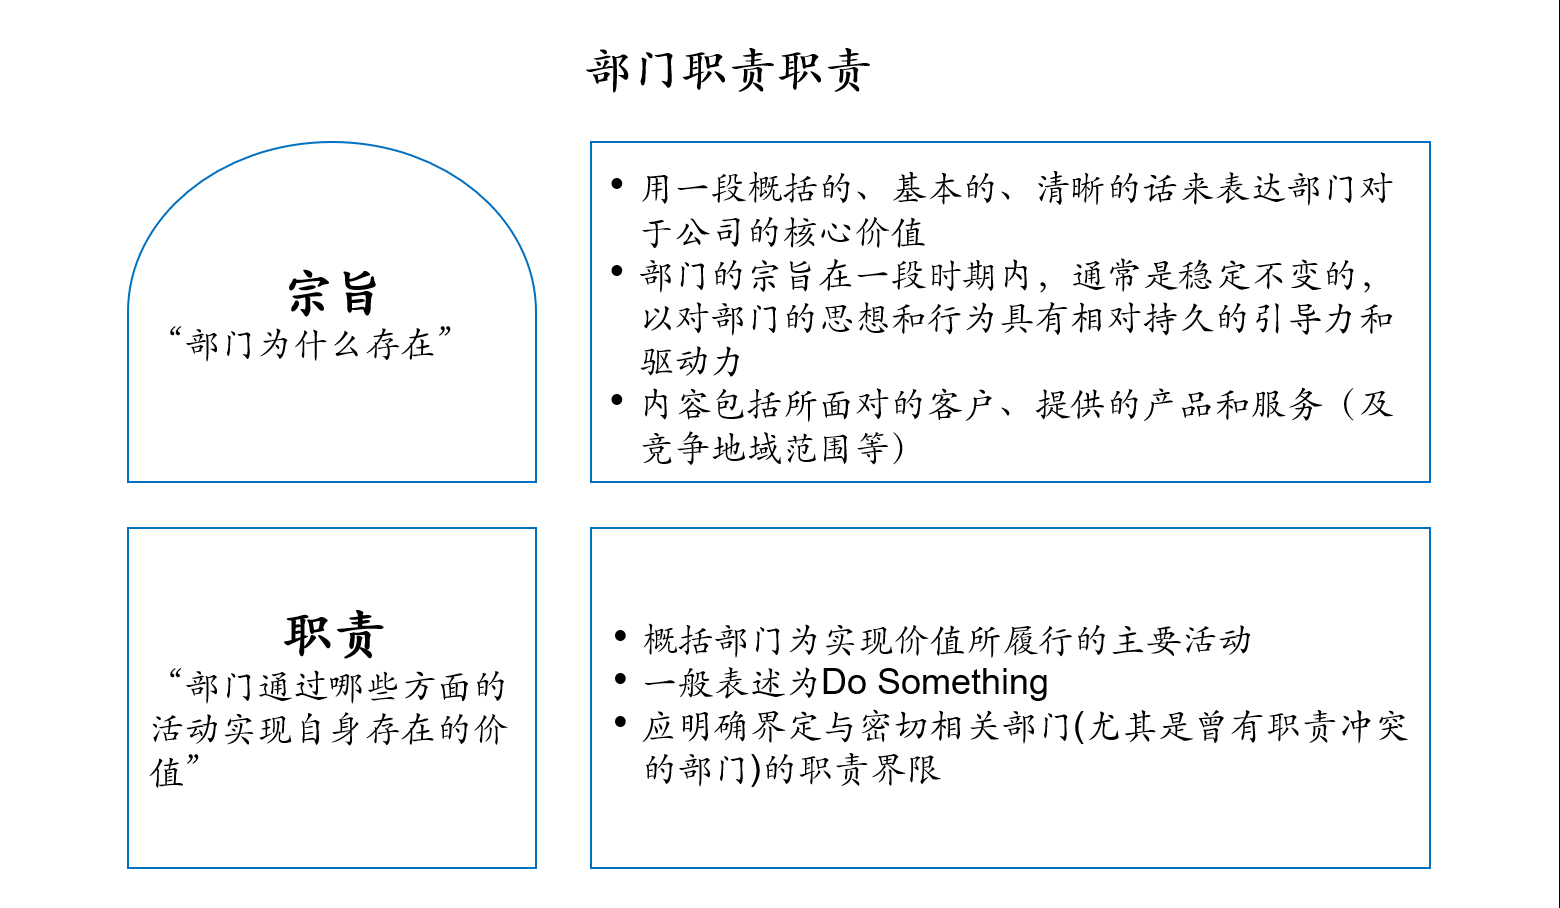 广州地铁集团有限公司组织架构优化和绩效激励机制咨询